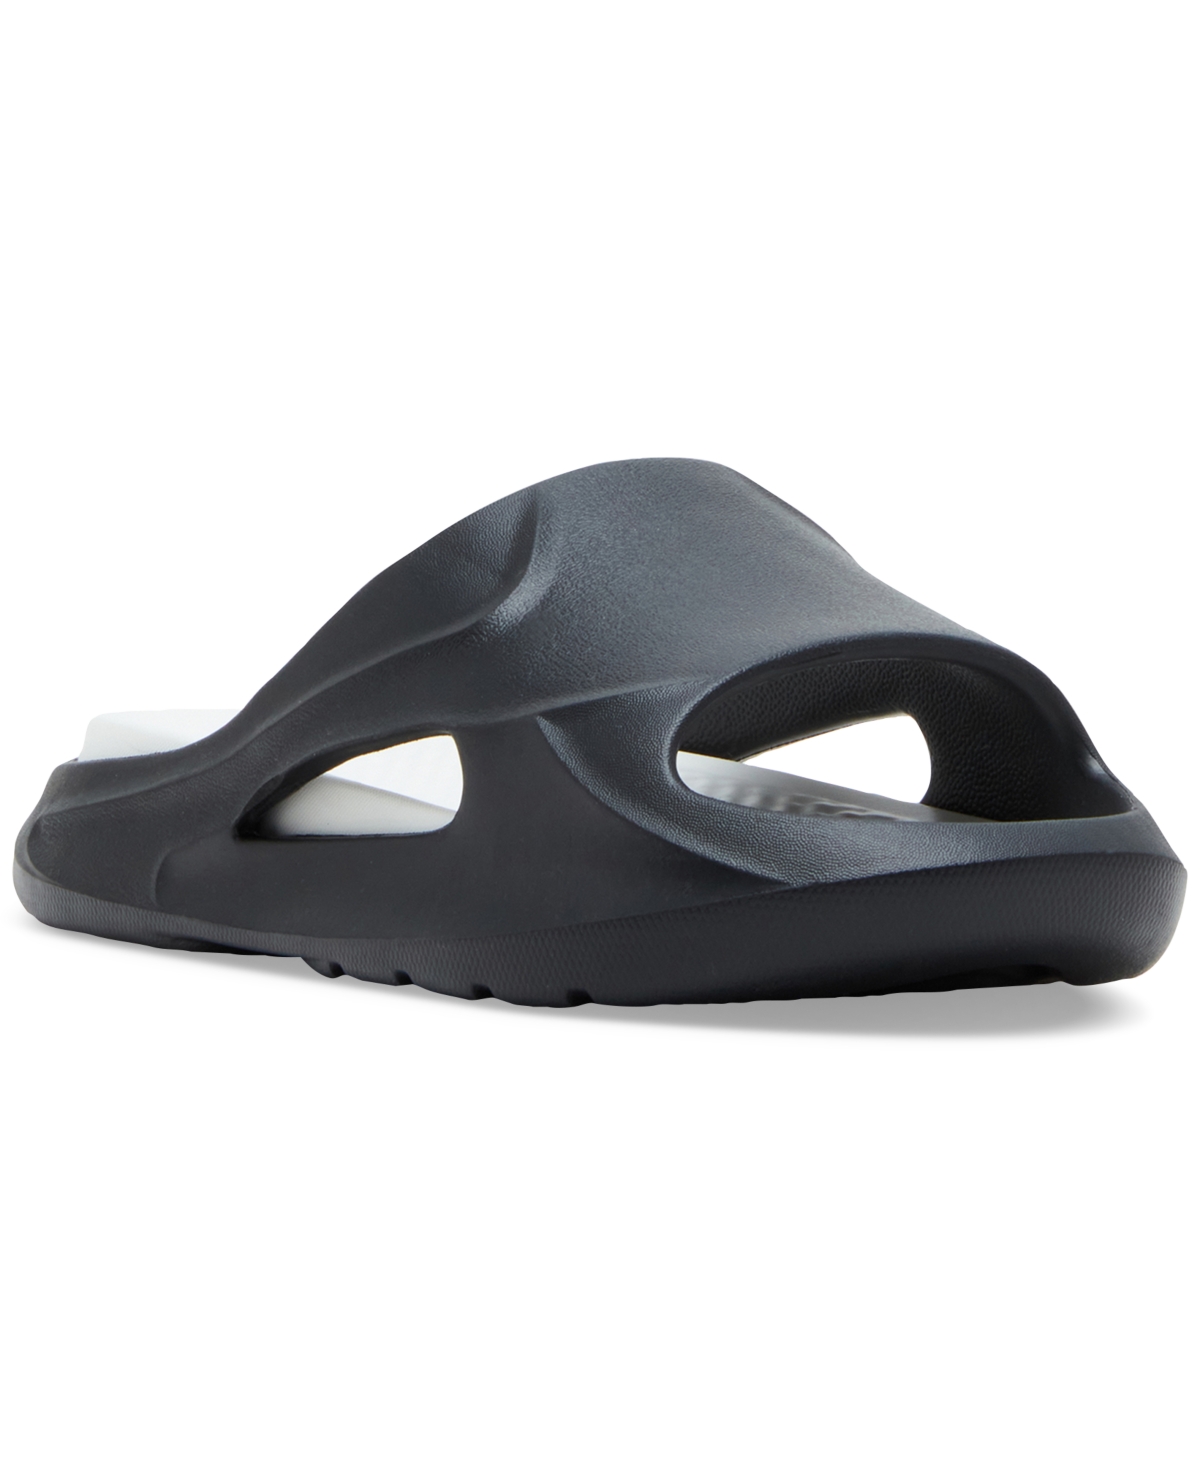 Men's M-Jerrii Sculptured Pool Slide Sandals - Black Rubber